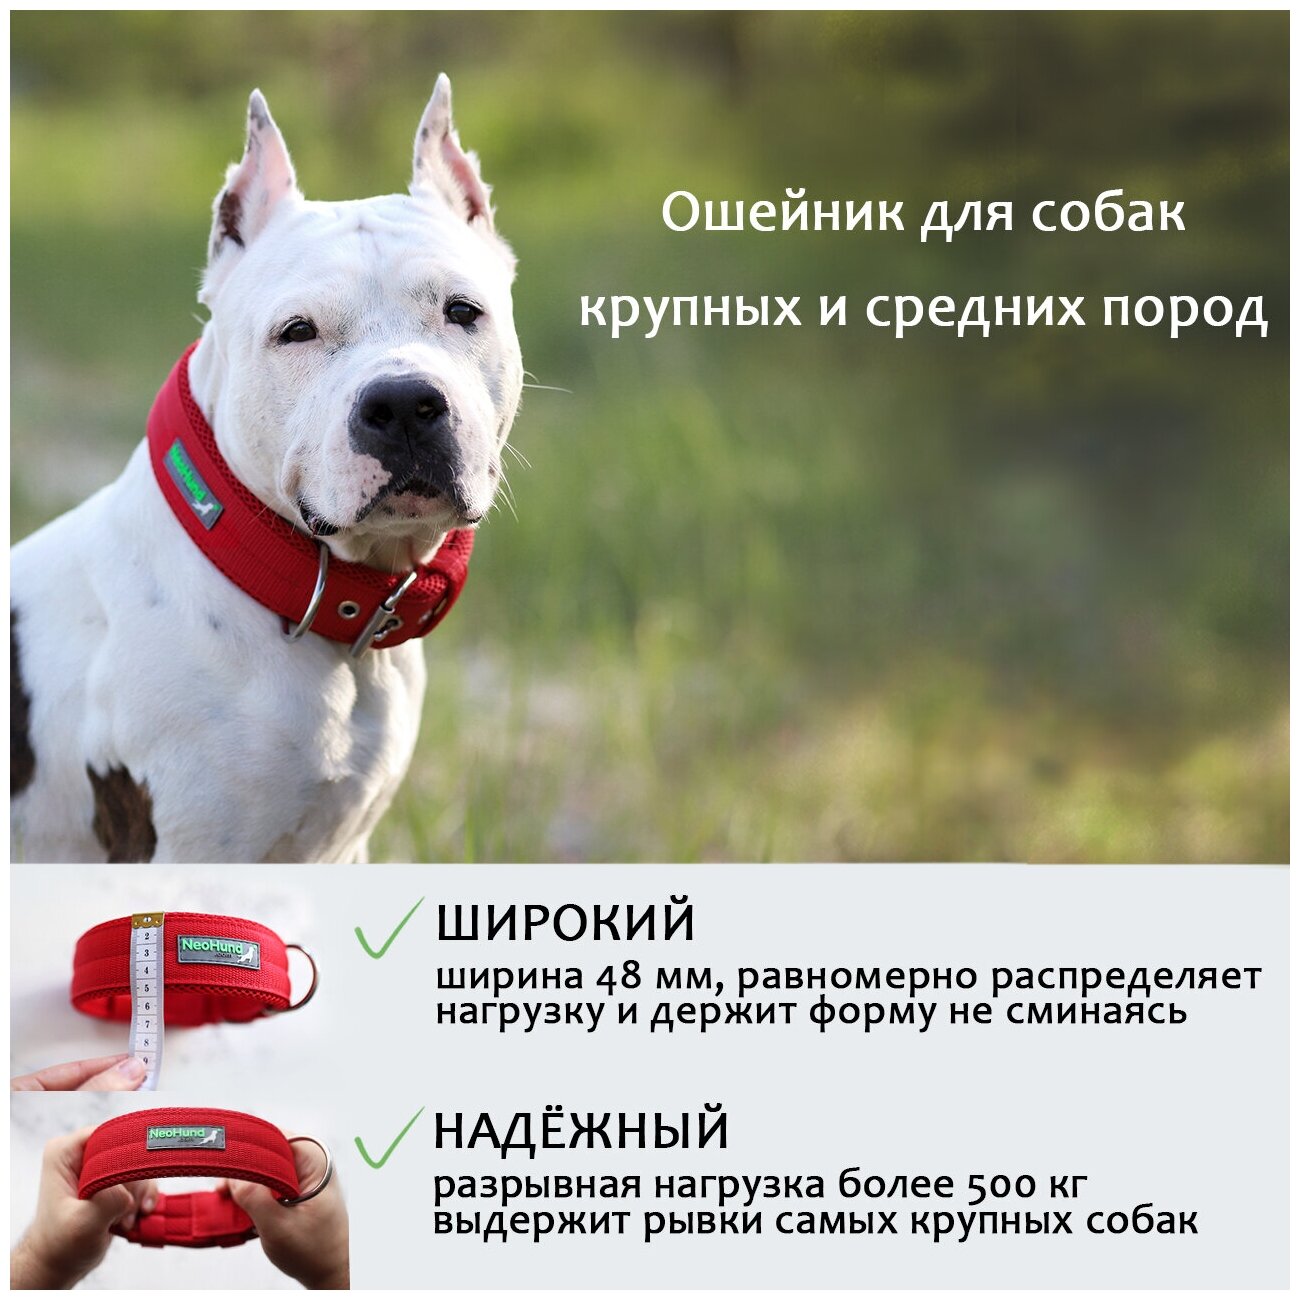 Ошейник для собак NeoHund широкий 4,8 см, для крупных и средних пород, цвет красный, обхват шеи 48-60 см - фотография № 2